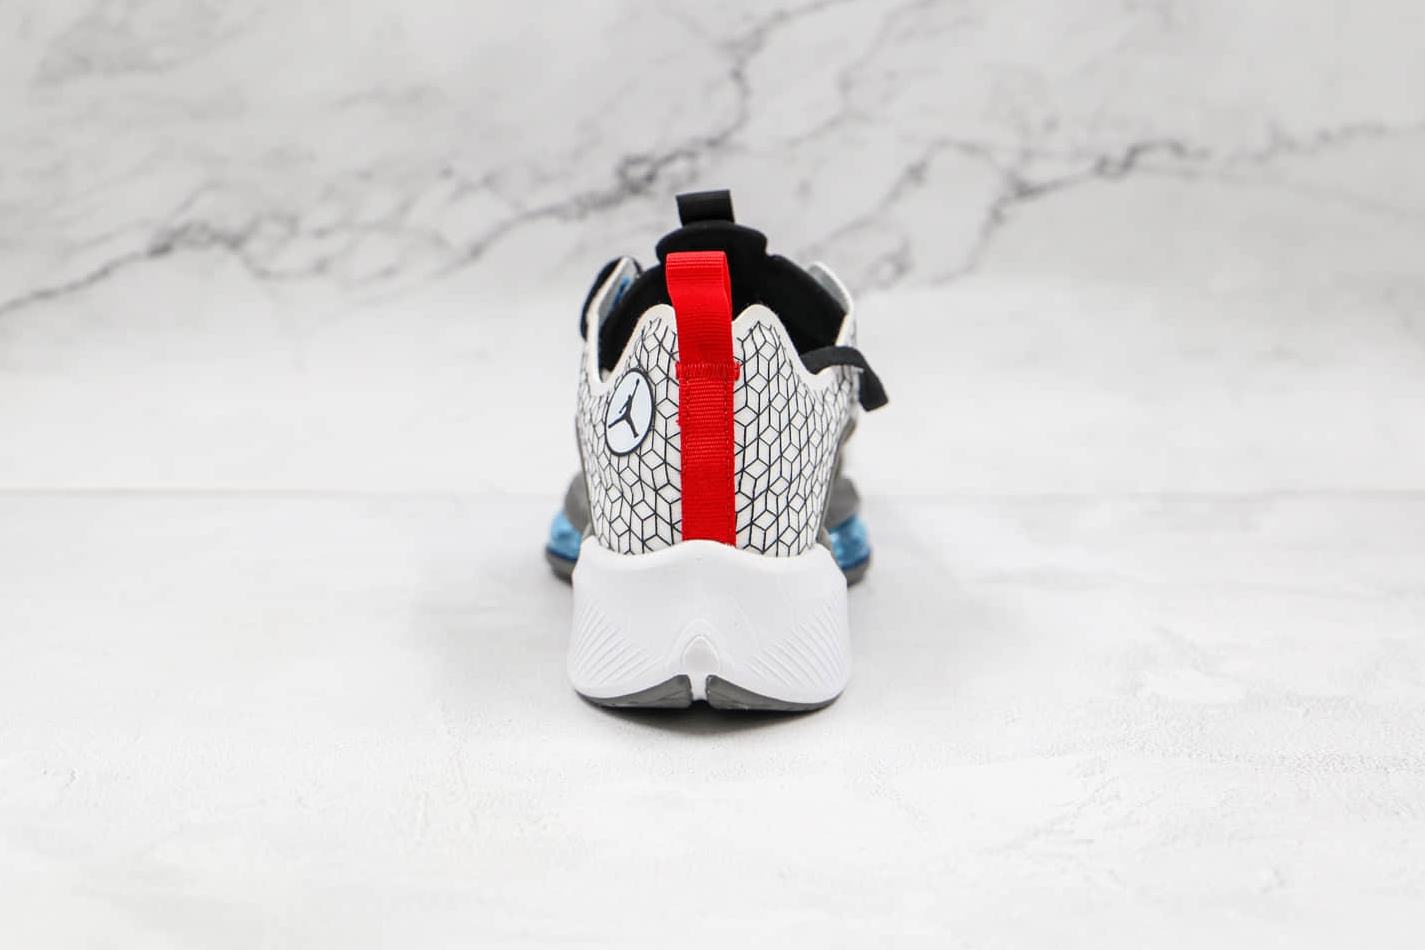 Nike Jordan Air Zoom Renegade Black Grey CJ5383-101 - Premium Athletic Sneakers at Affordable Prices